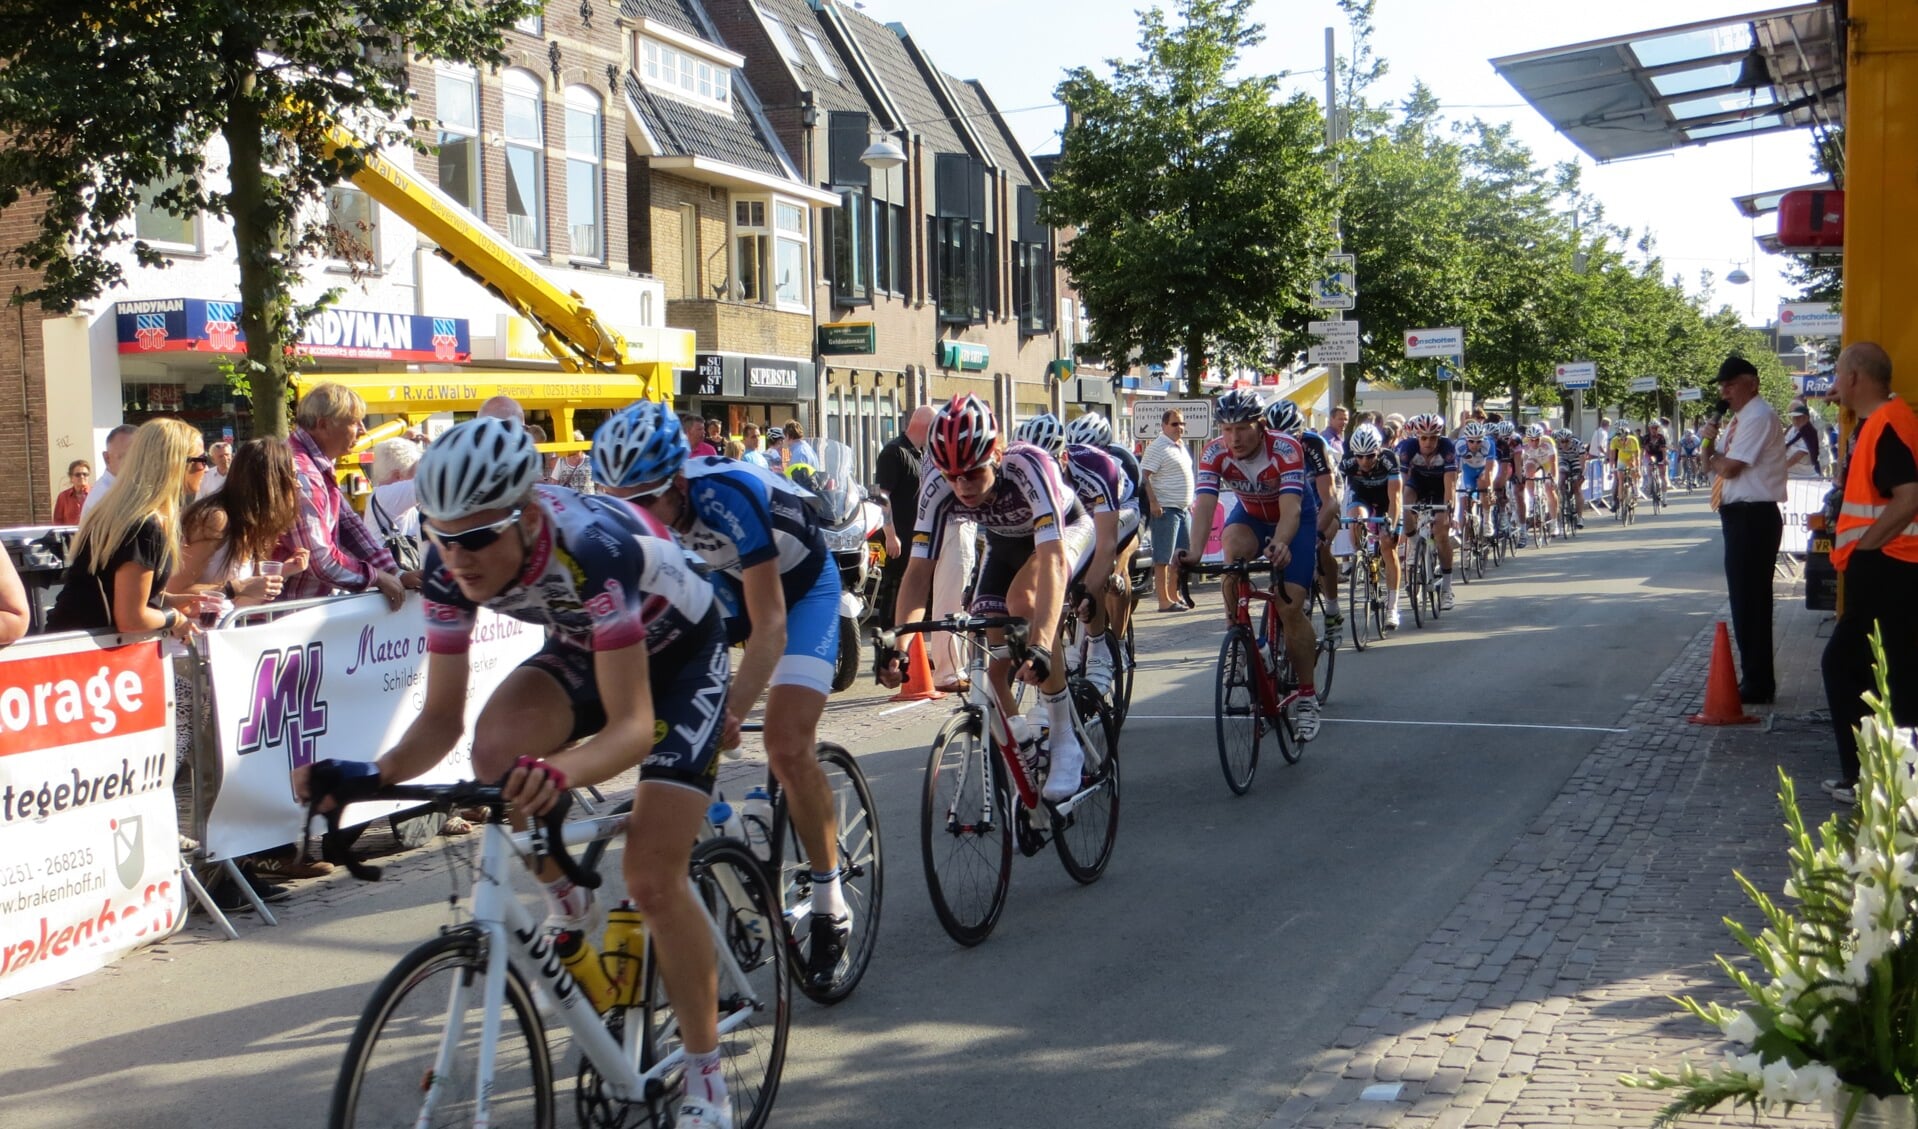 Dankzij inspanningen van het nieuwe wielercomité is het gelukt om de Wielerronde van Beverwijk financieel rond te krijgen.